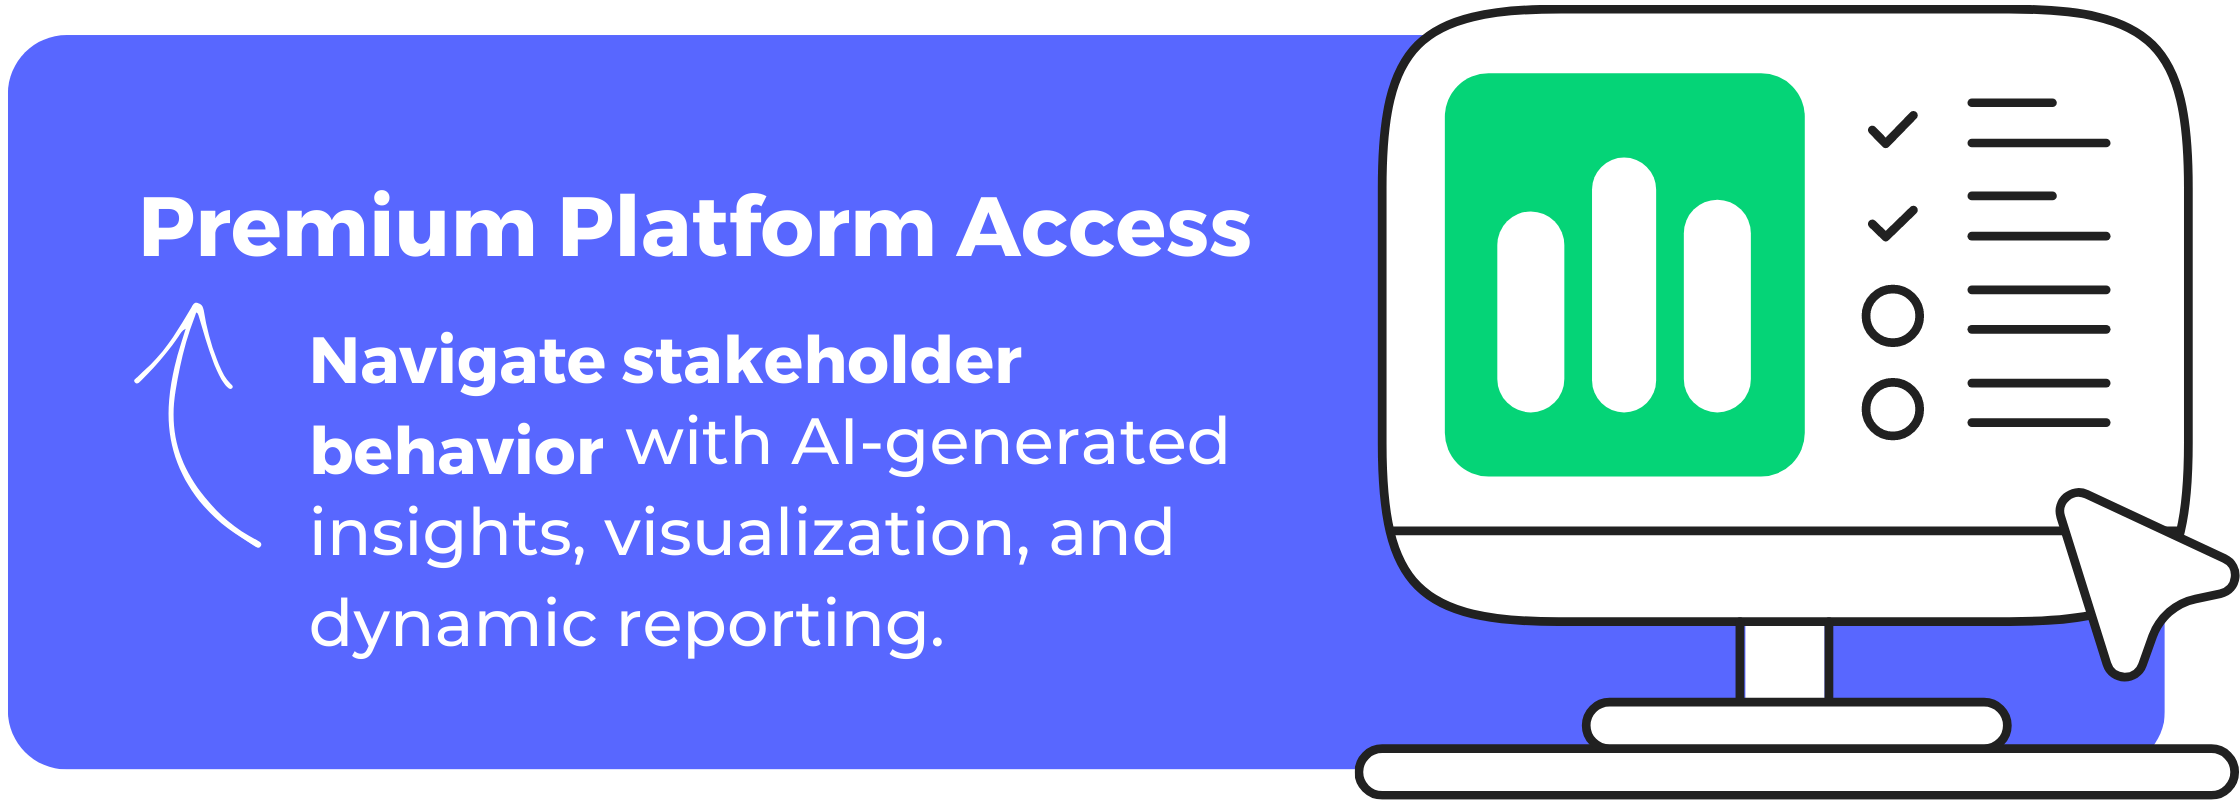 Premium Platform Access